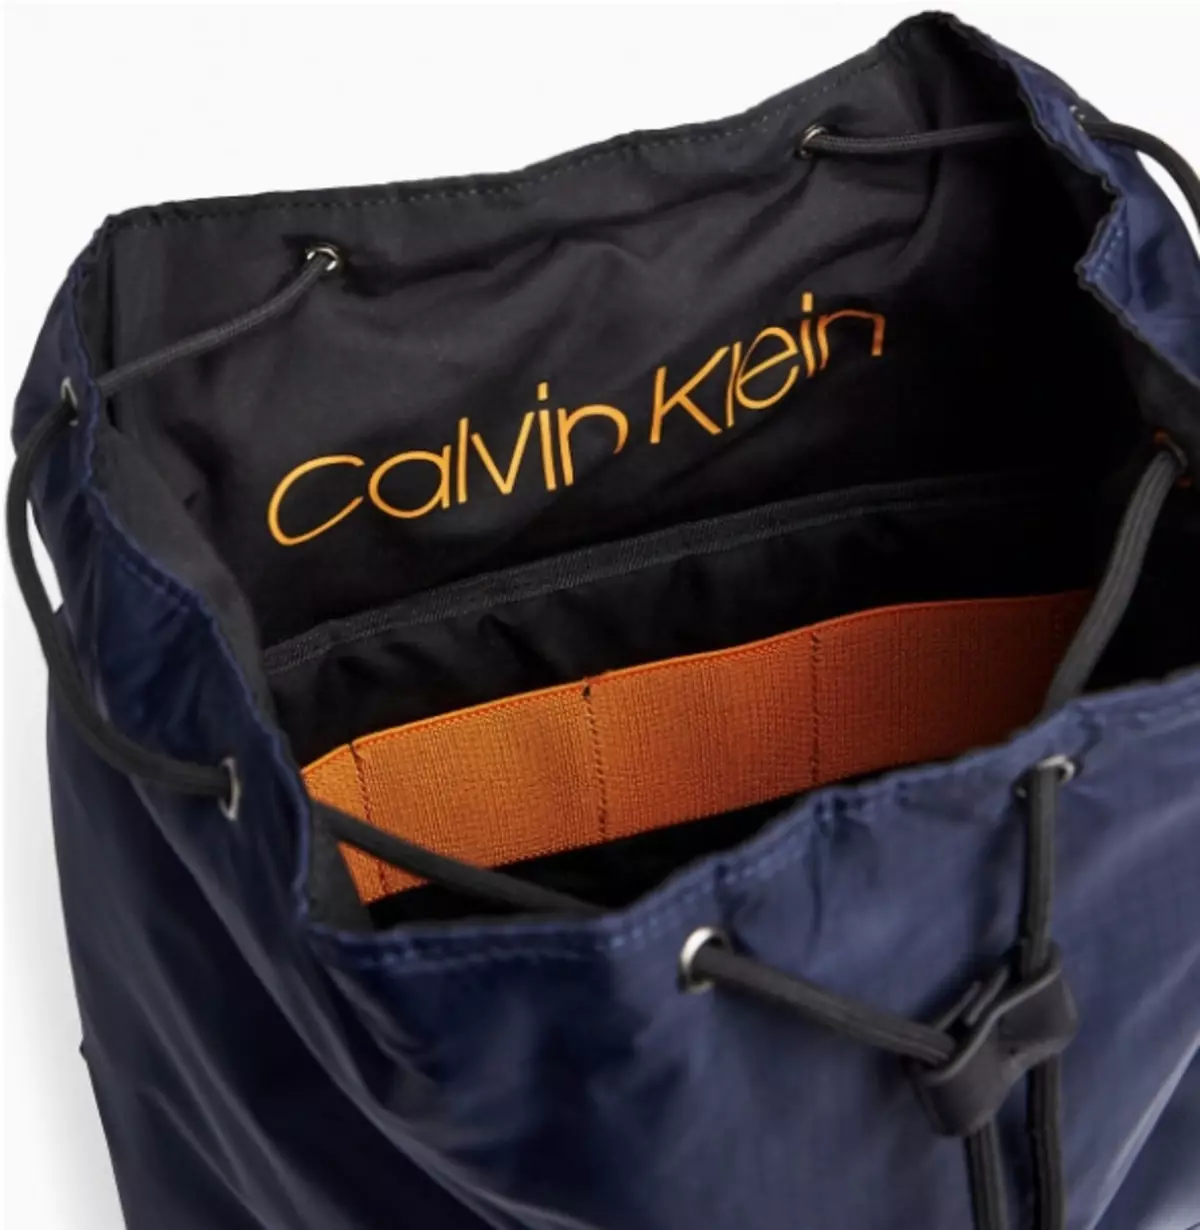 Calvin Klein ကျောပိုးအိတ်များ - အနက်ရောင်အမျိုးသမီး, သားရေနီ, အဖြူရောင်, အဖြူရောင်, အဝါရောင်နှင့်အခြားအရောင်များအိတ်များ - ကျောပိုးအိတ်များနှင့် 15401_35